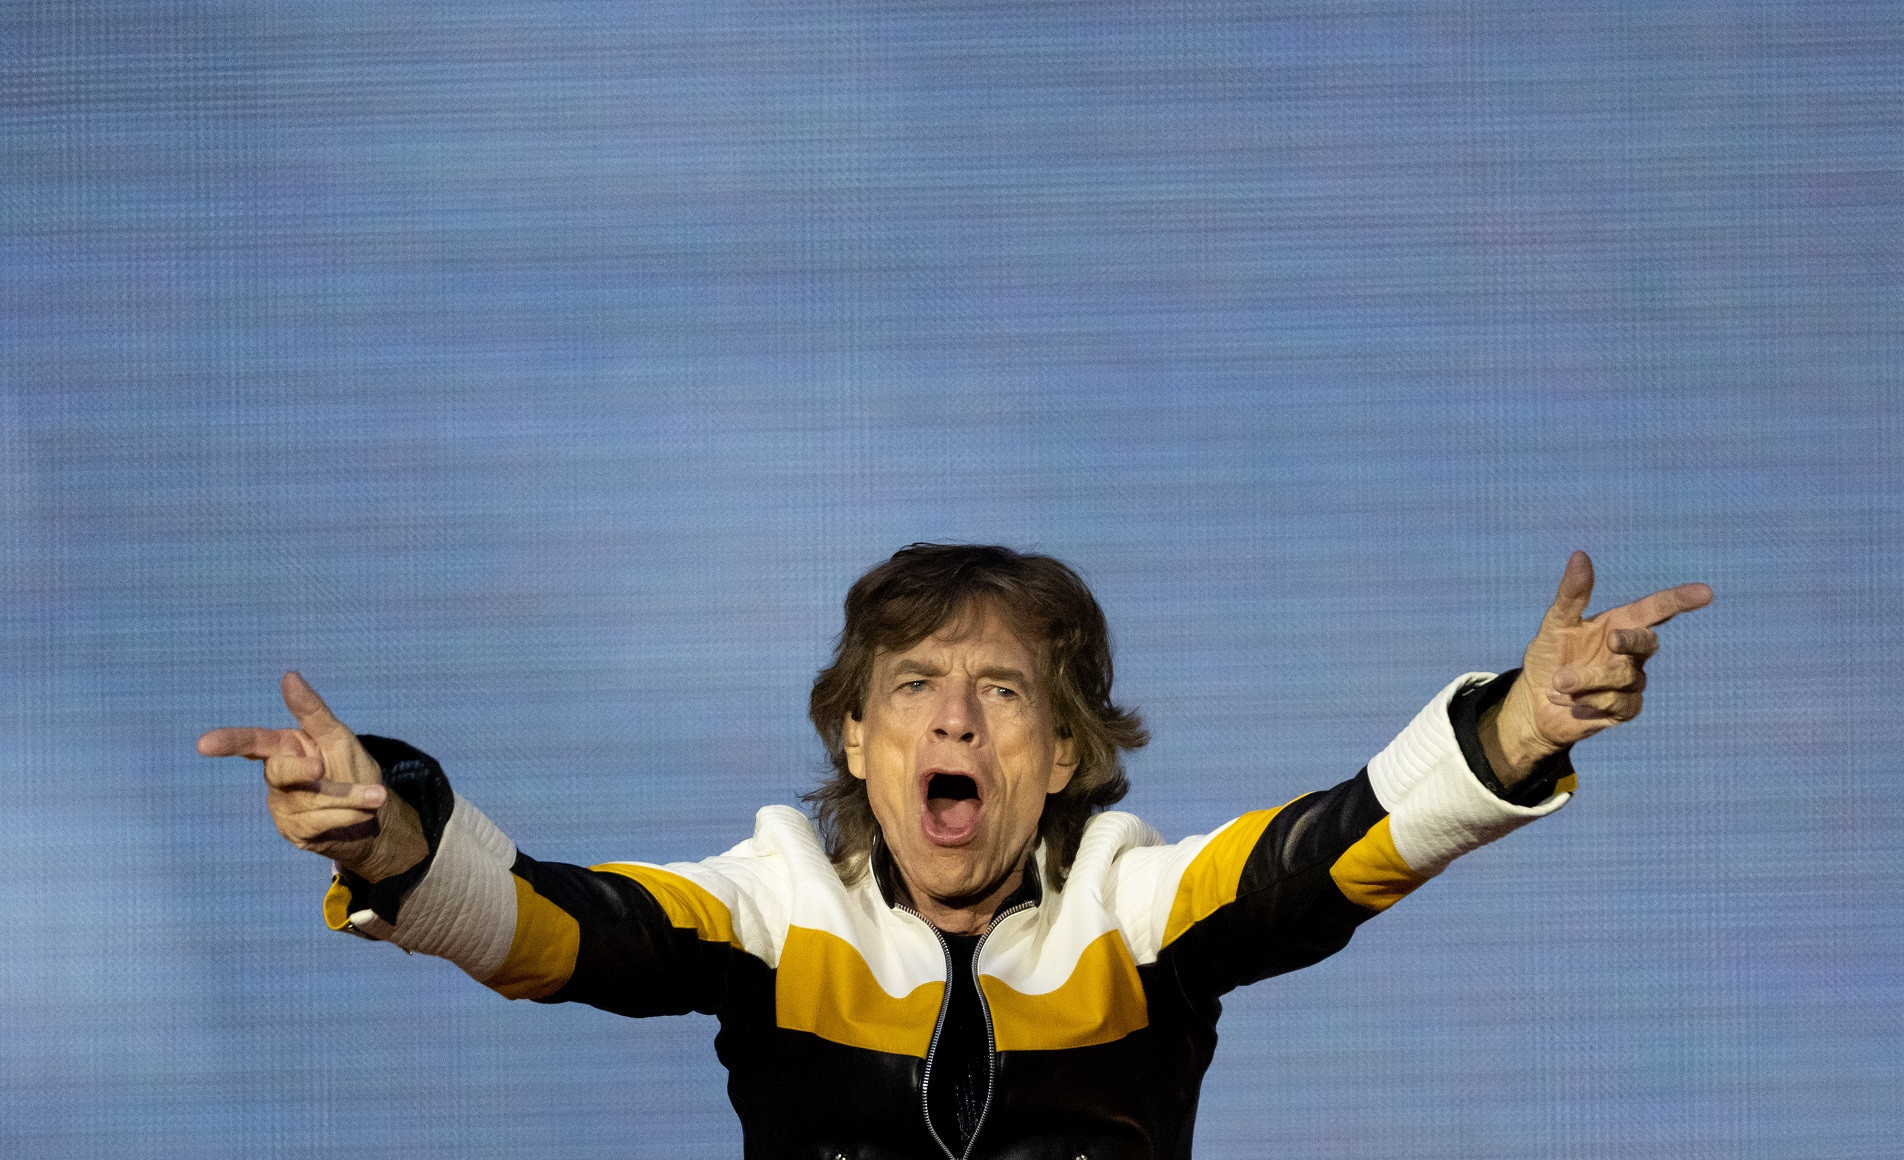 Mick Jagger koronavírusos, a kezdés előtt 1,5 órával fújták le a Rolling Stones amszterdami koncertjét